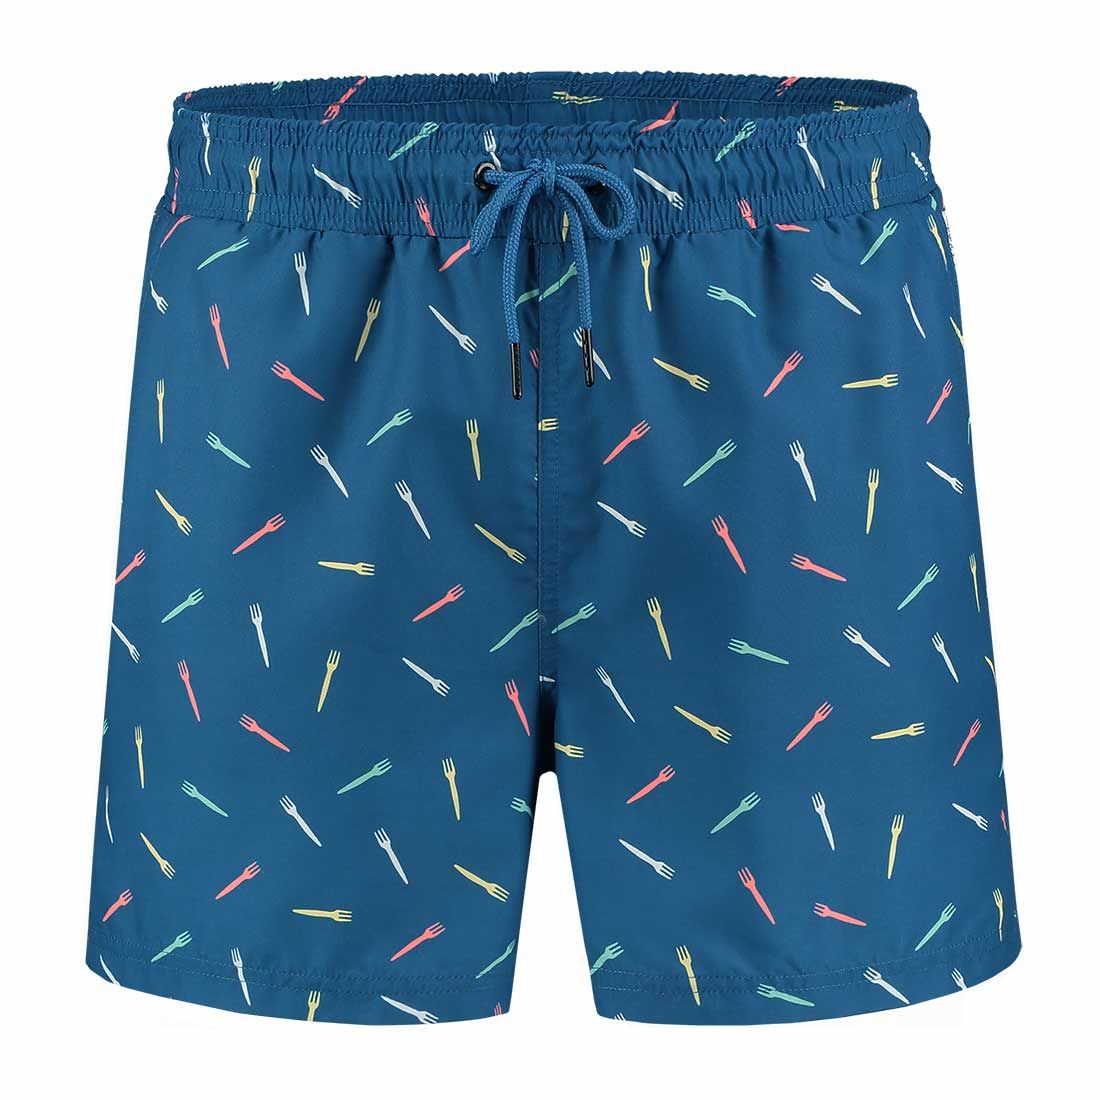 A-dam Underwear swim shorts - Piet